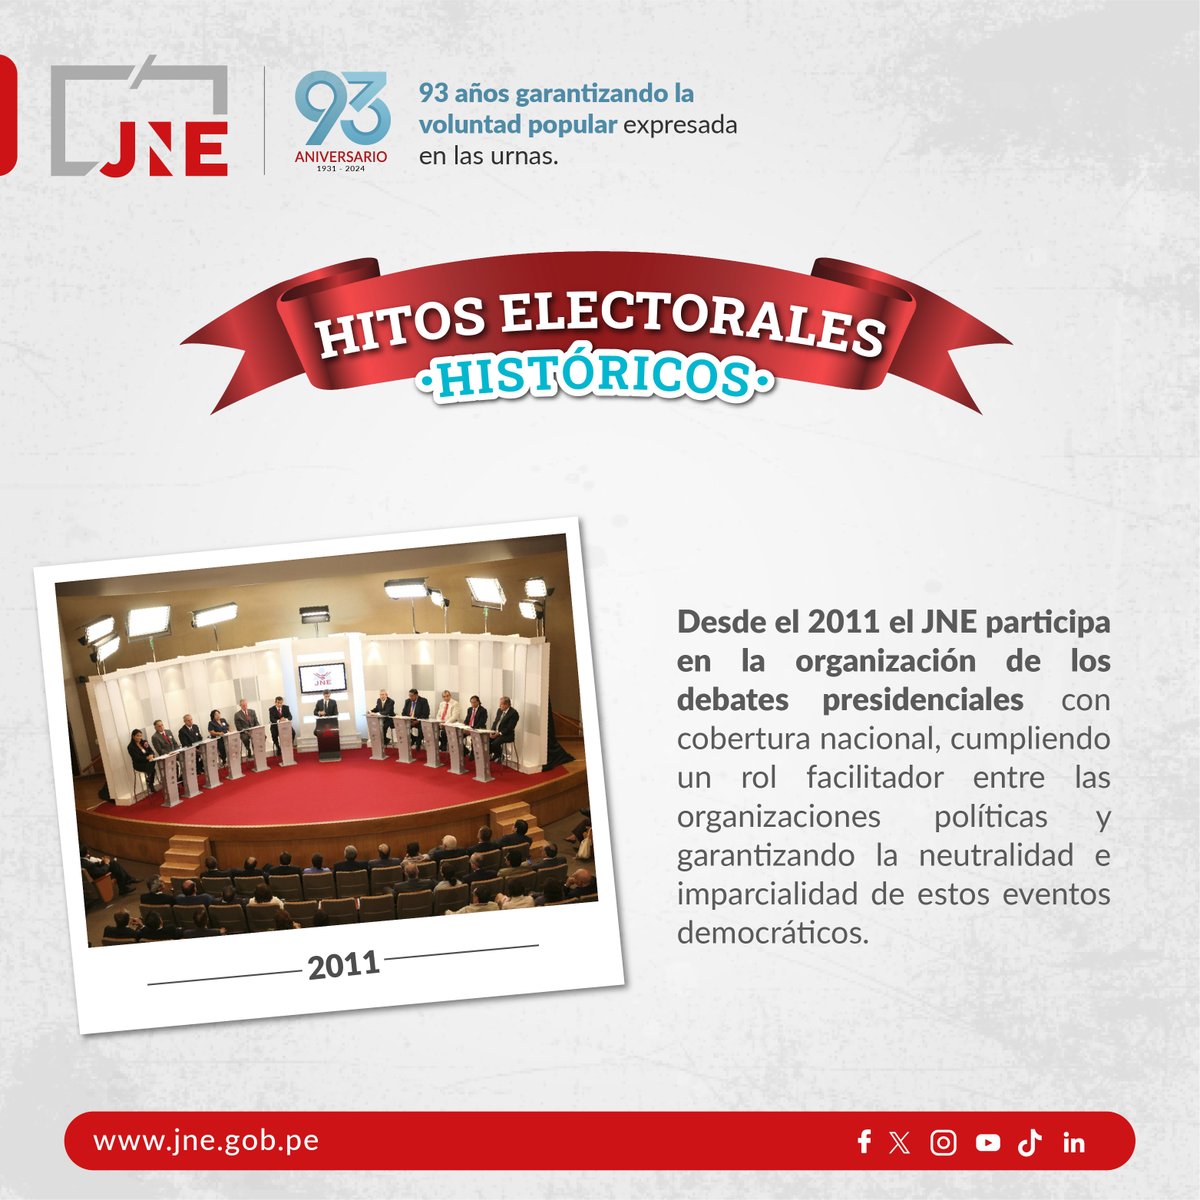 #93AniversarioJNE | El próximo 26 de mayo el Jurado Nacional de Elecciones cumple 93 años de vida institucional, la conmemoración de esta fecha es propicia para recordar hitos electorales que han marcado la historia de la democracia en el Perú.